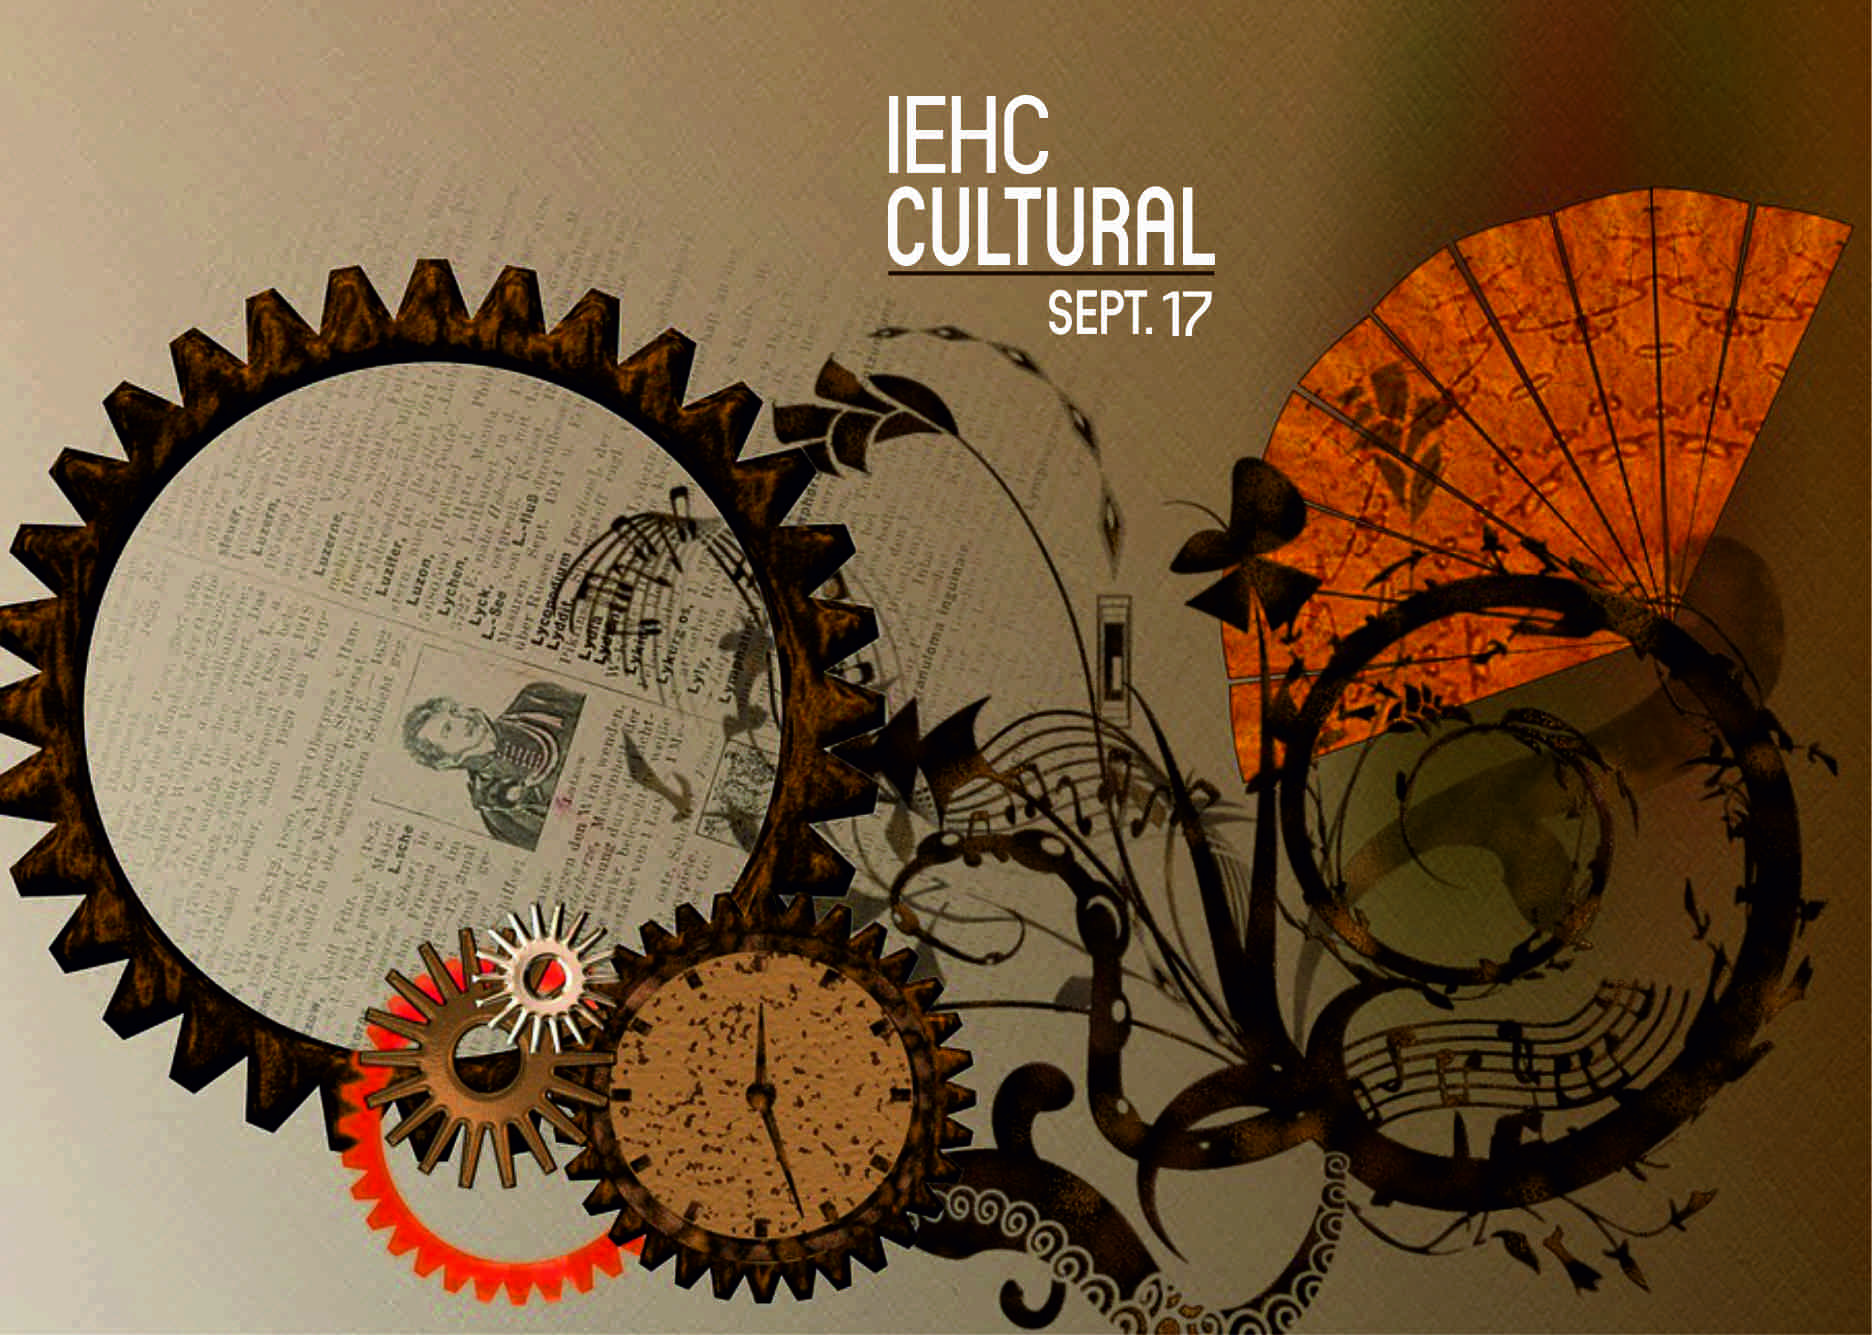 IEHC cultural septiembre 2017